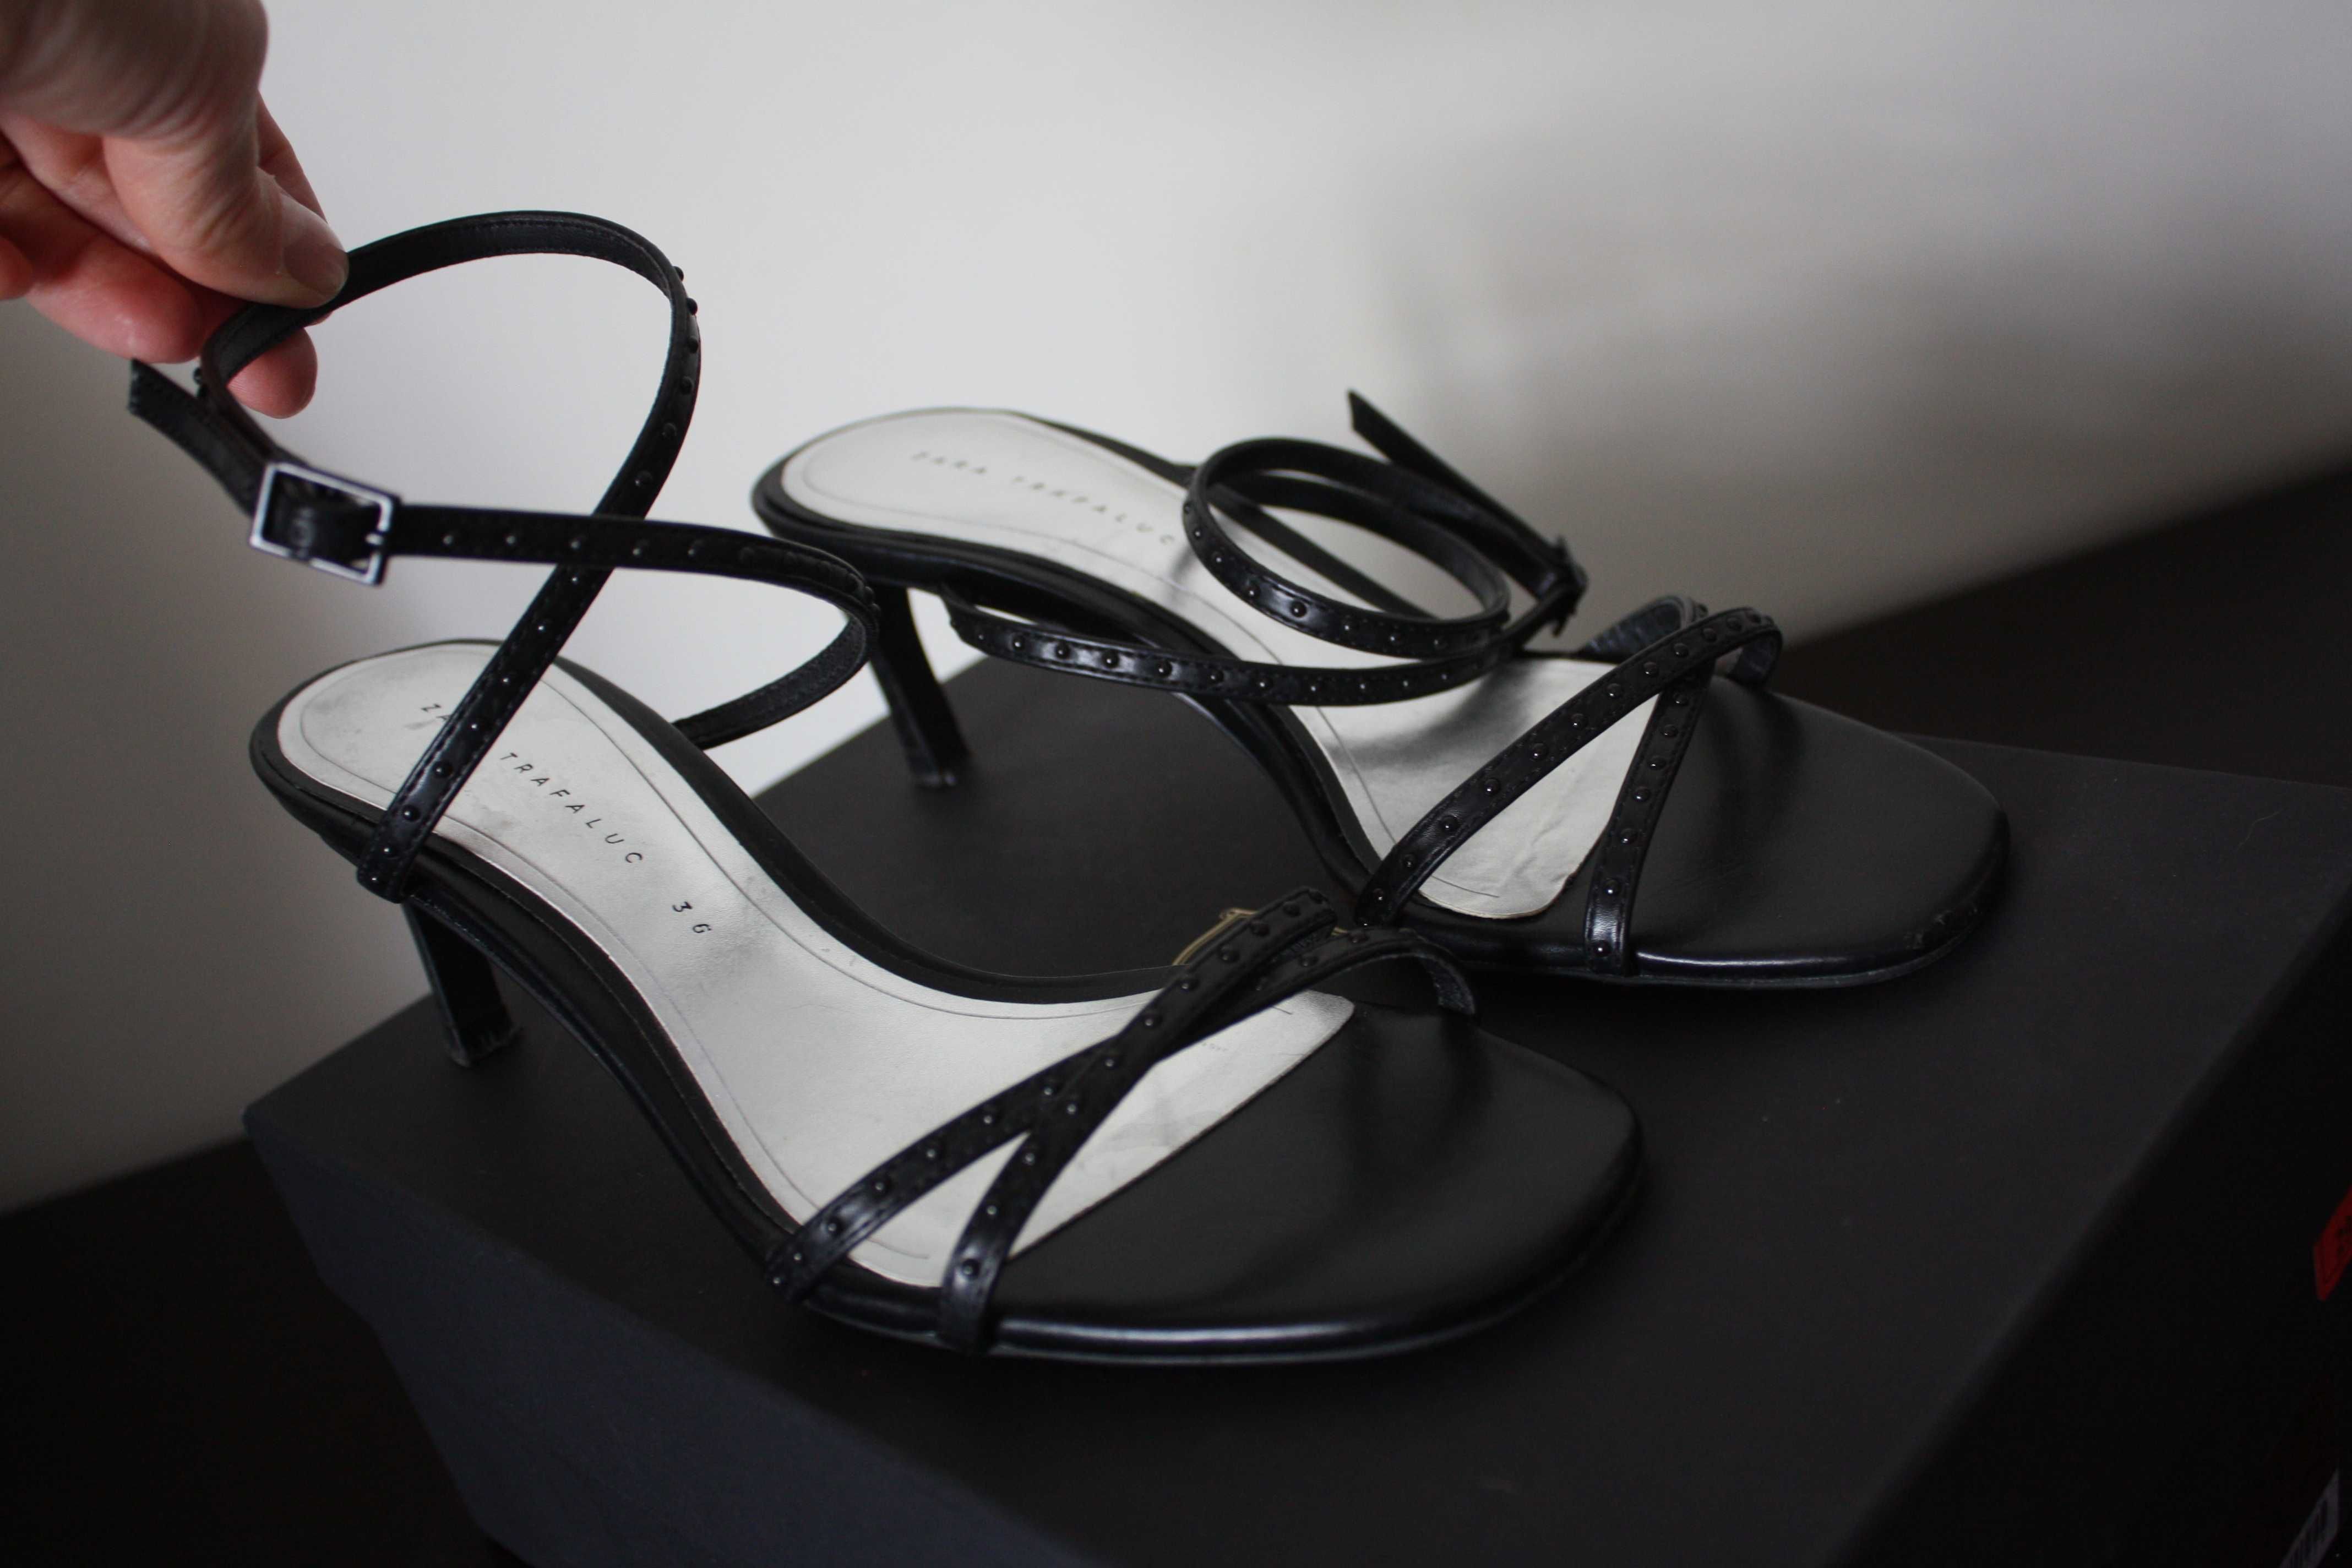 Sandálias de tacão Zara